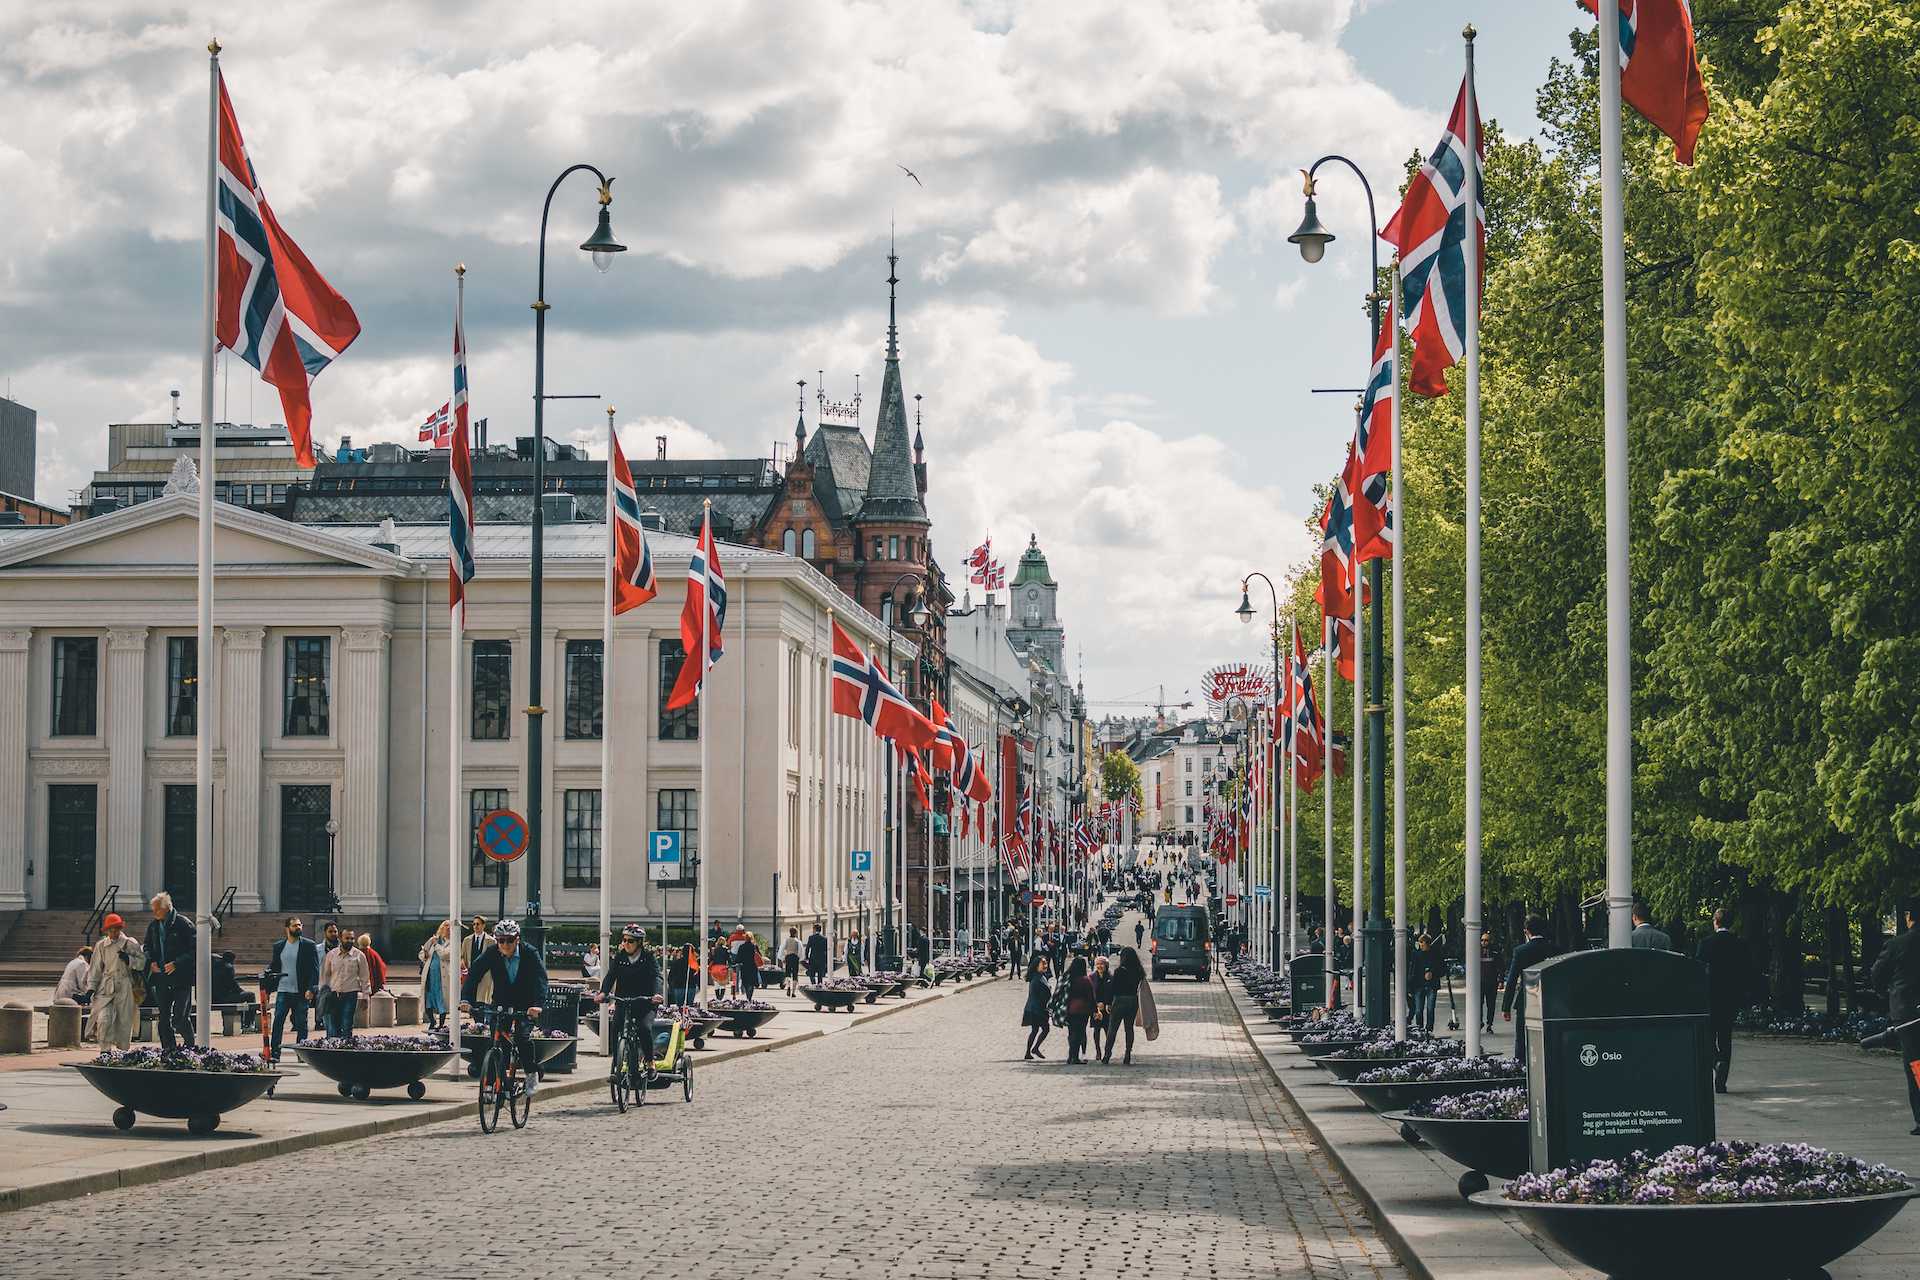 17 maja ulice norweskich miast pełne są państwowych flag (fot. Sylwia Smółkowska / KierunekNorwegia.pl)